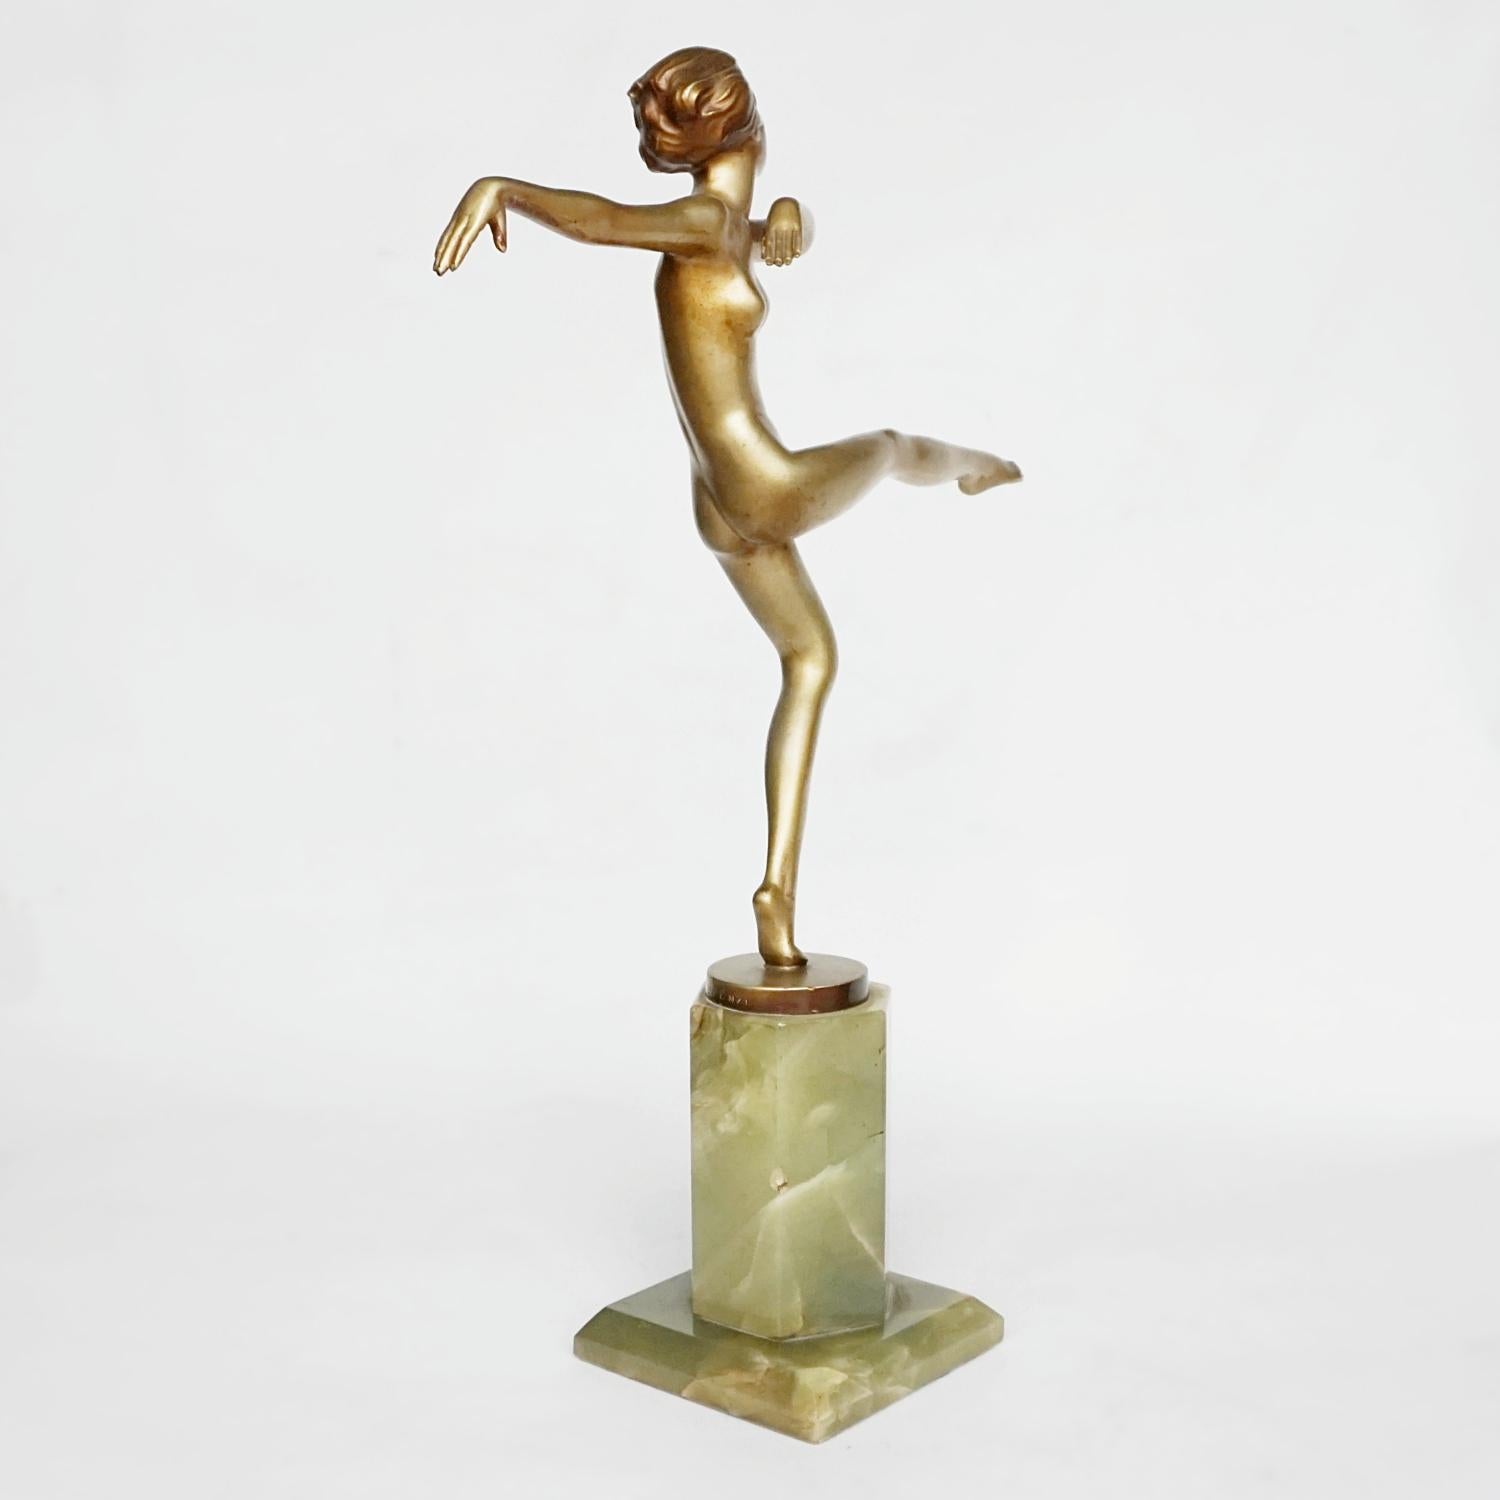 'High Kick' An Art Deco Cold Painted Bronze Sculpture by Josef Lorenzl 2